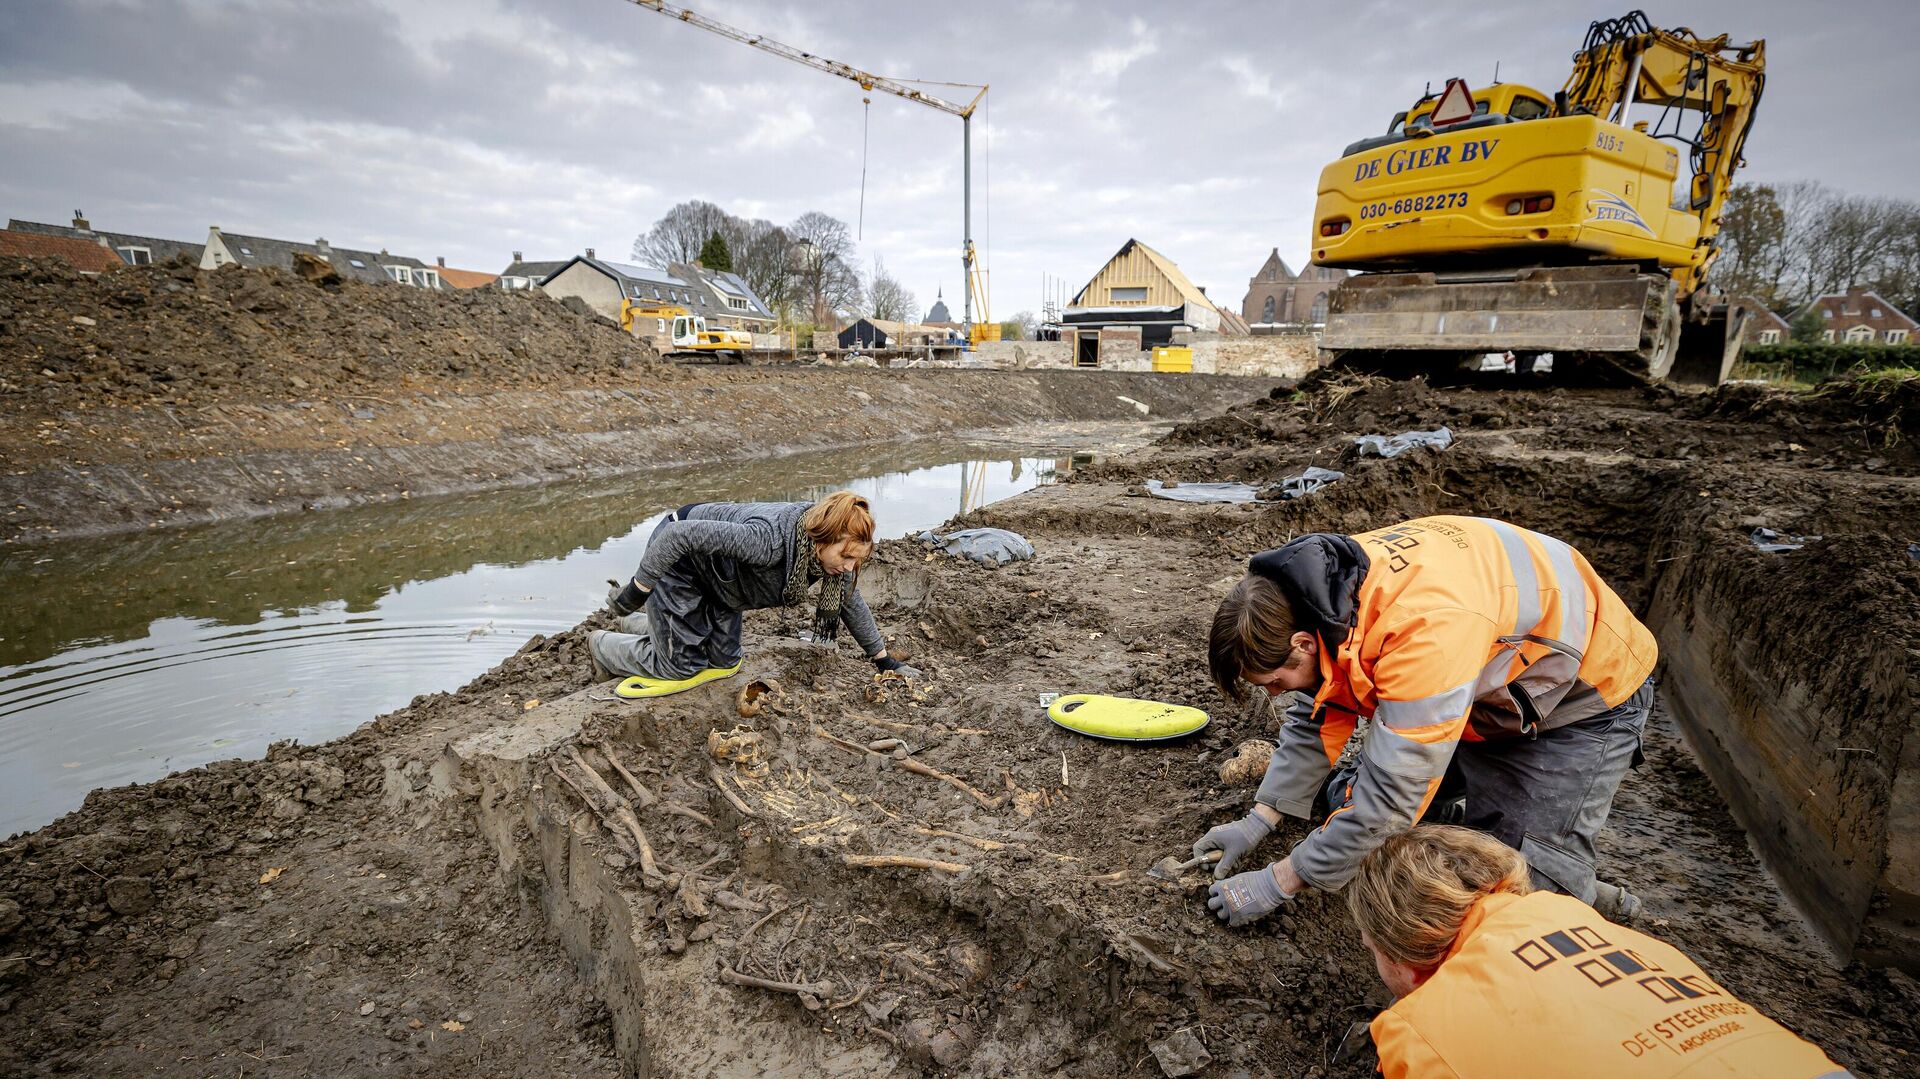 Археологи работают на месте массового захоронения, предположительно периода средневековья, в городе Вианен, Нидерланды - РИА Новости, 1920, 27.11.2020